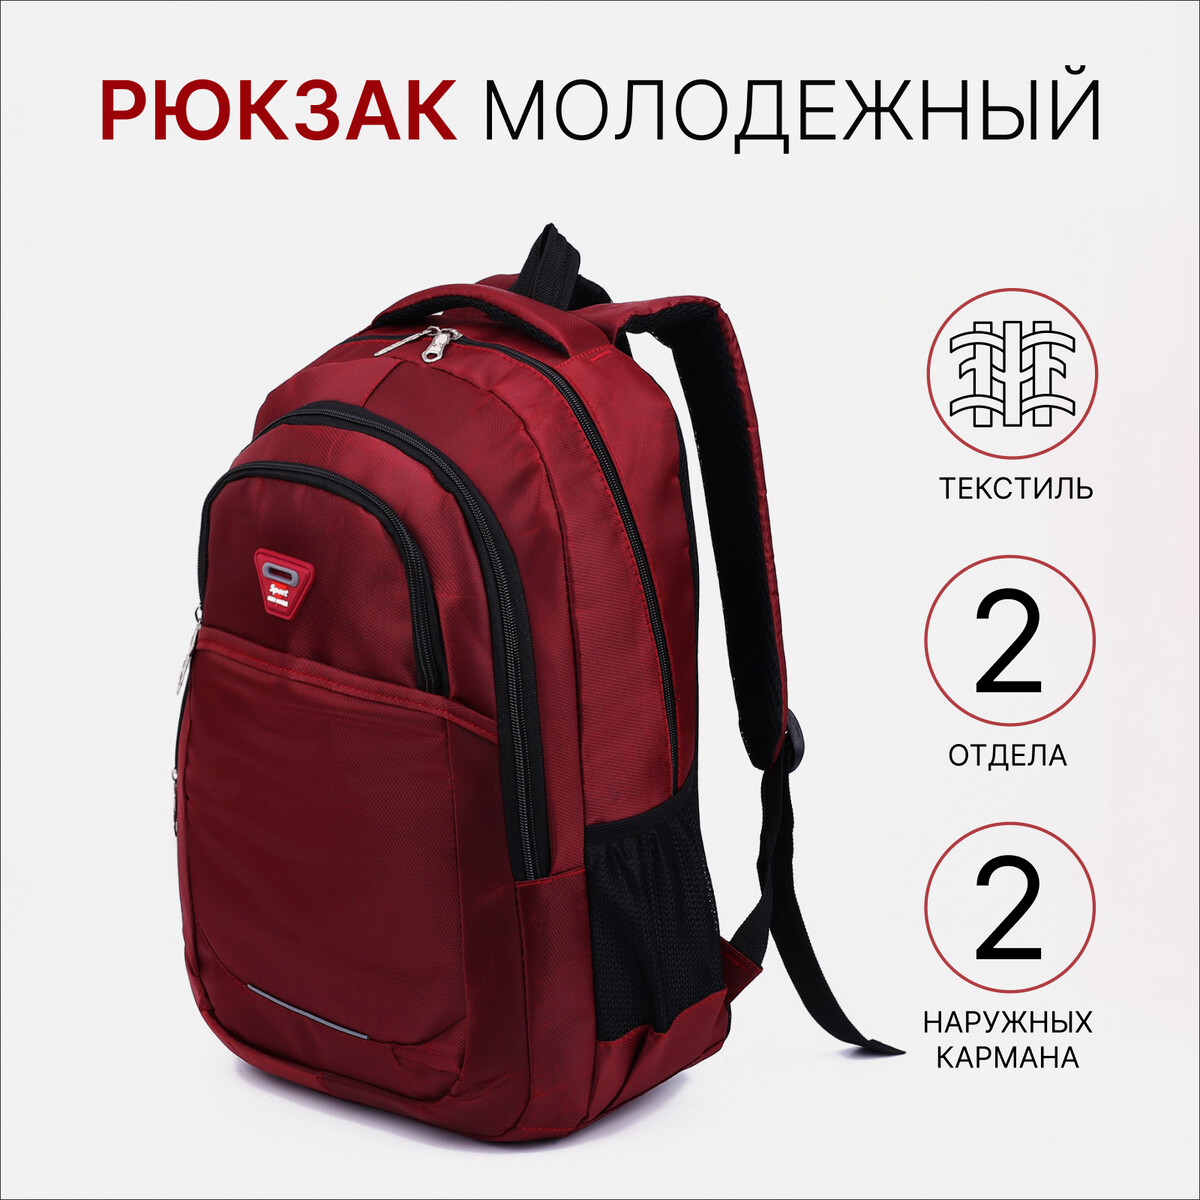 Рюкзак молодежный из текстиля, 2 отдела, 2 кармана, цвет бордовый